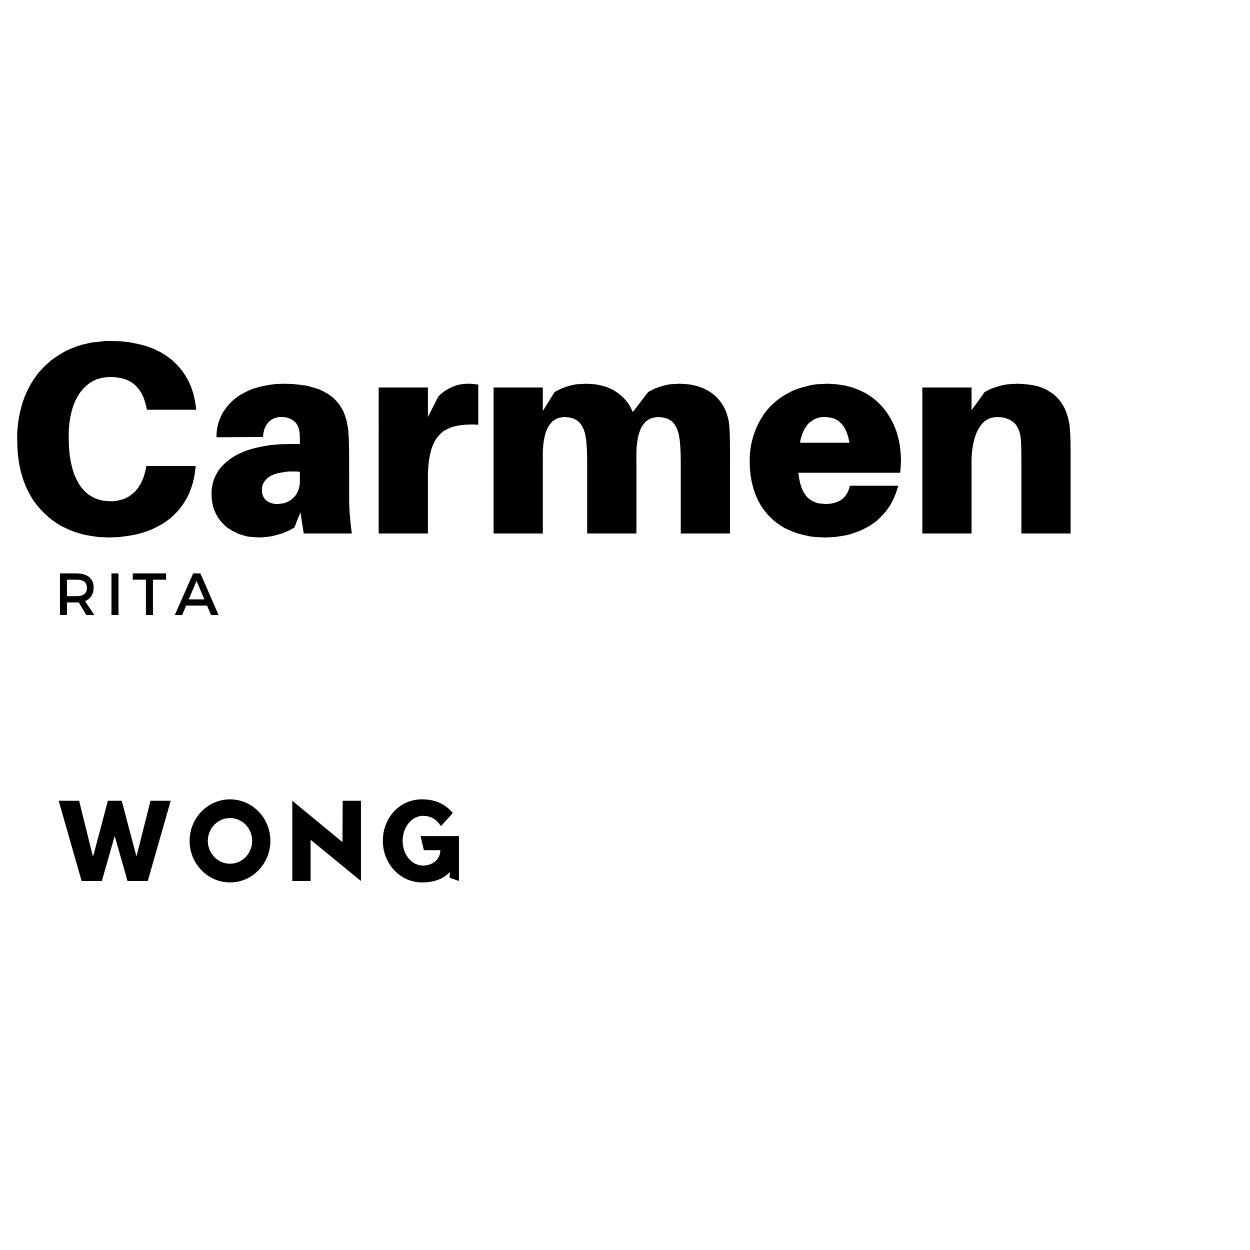 Carmen Rita Wong